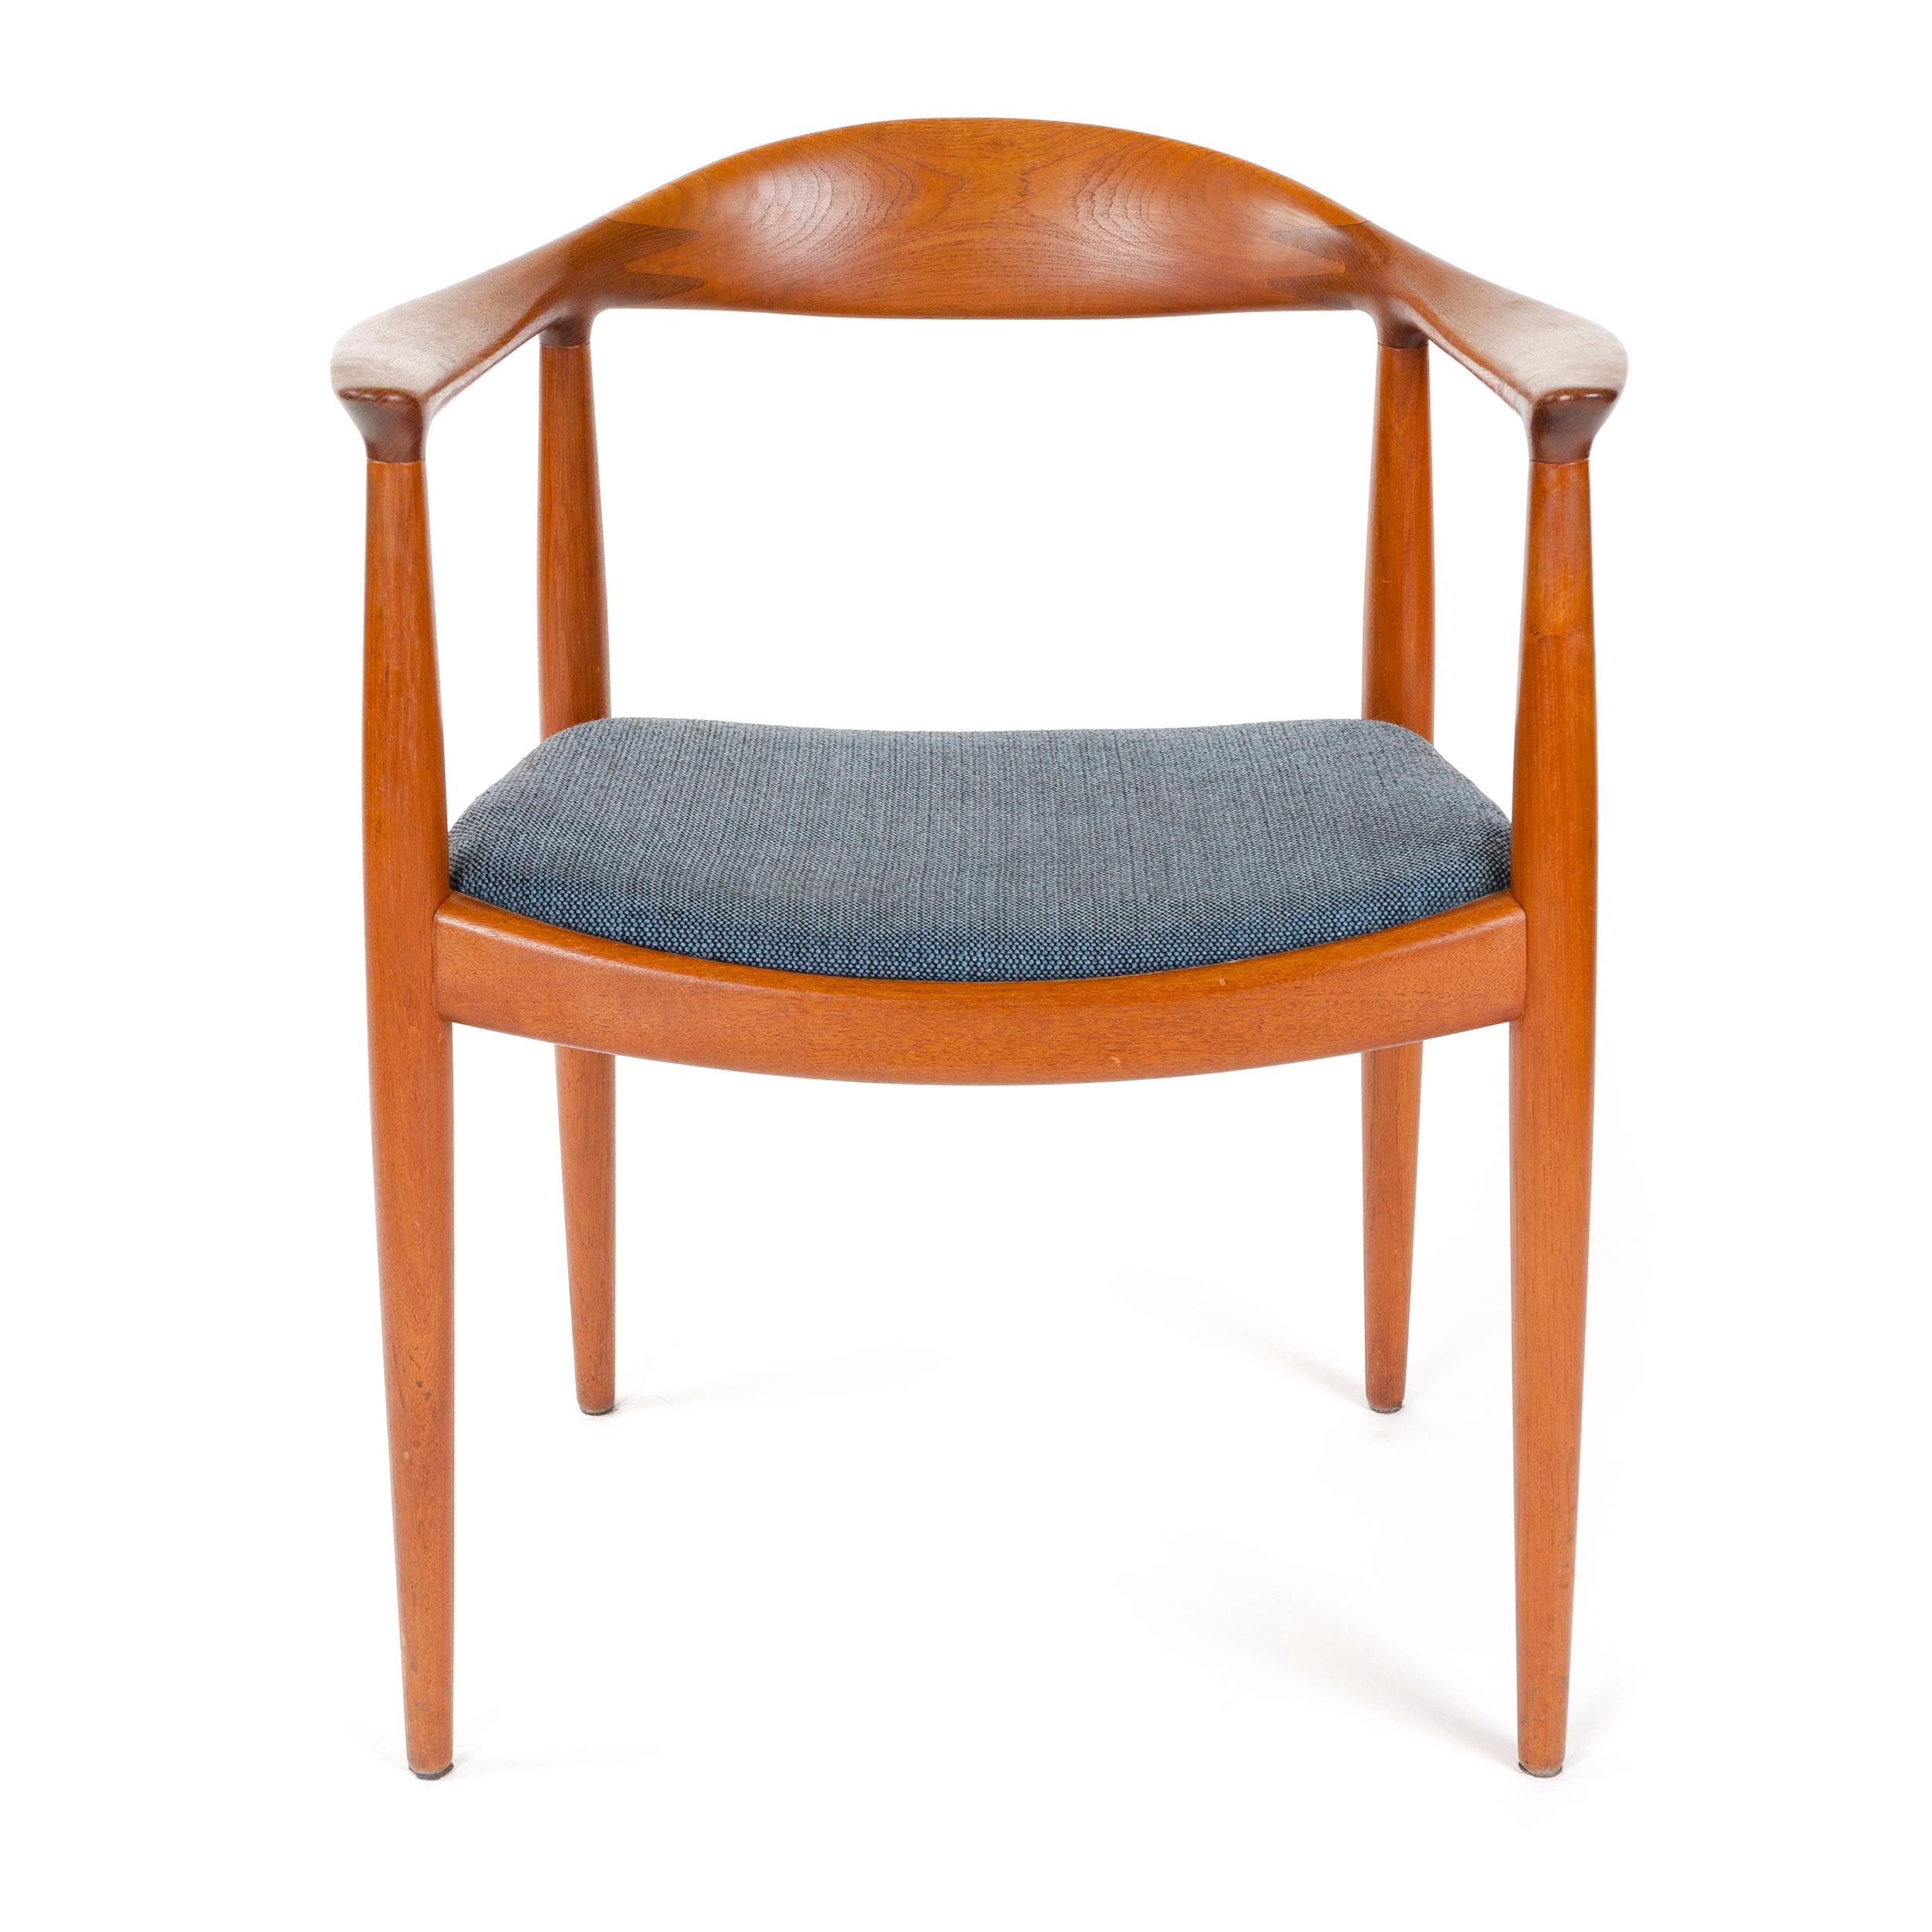 Scandinavian Modern Teak Round Chair with Upholstered Seat by Hans J. Wegner for Johannes Hansen